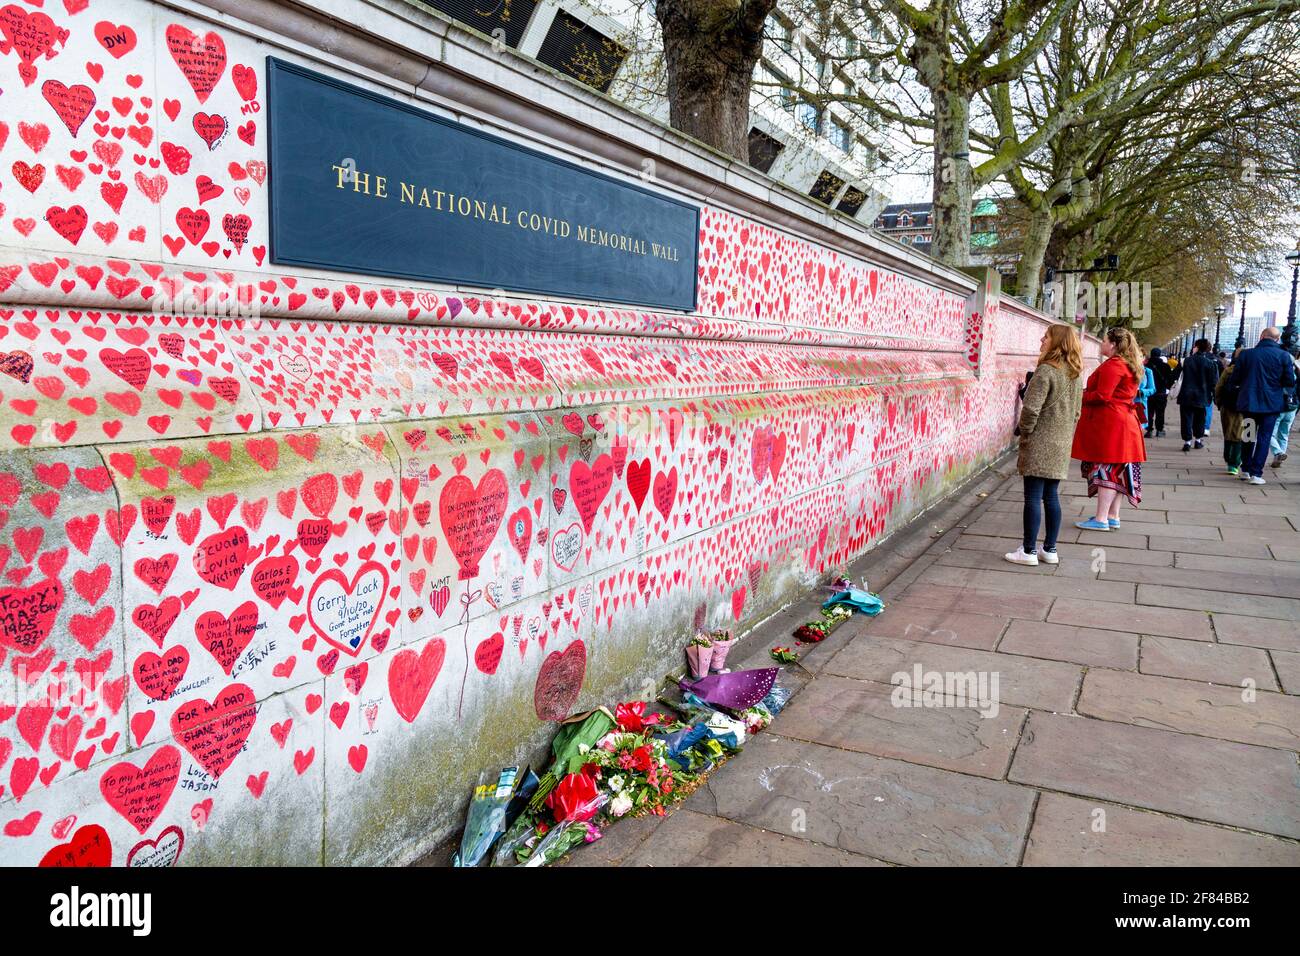 11 avril 2021, Londres, Royaume-Uni - le mur commémoratif national COVID le long de la rive sud a rempli de cœur pour commémorer les morts pendant la pandémie du coronavirus Banque D'Images